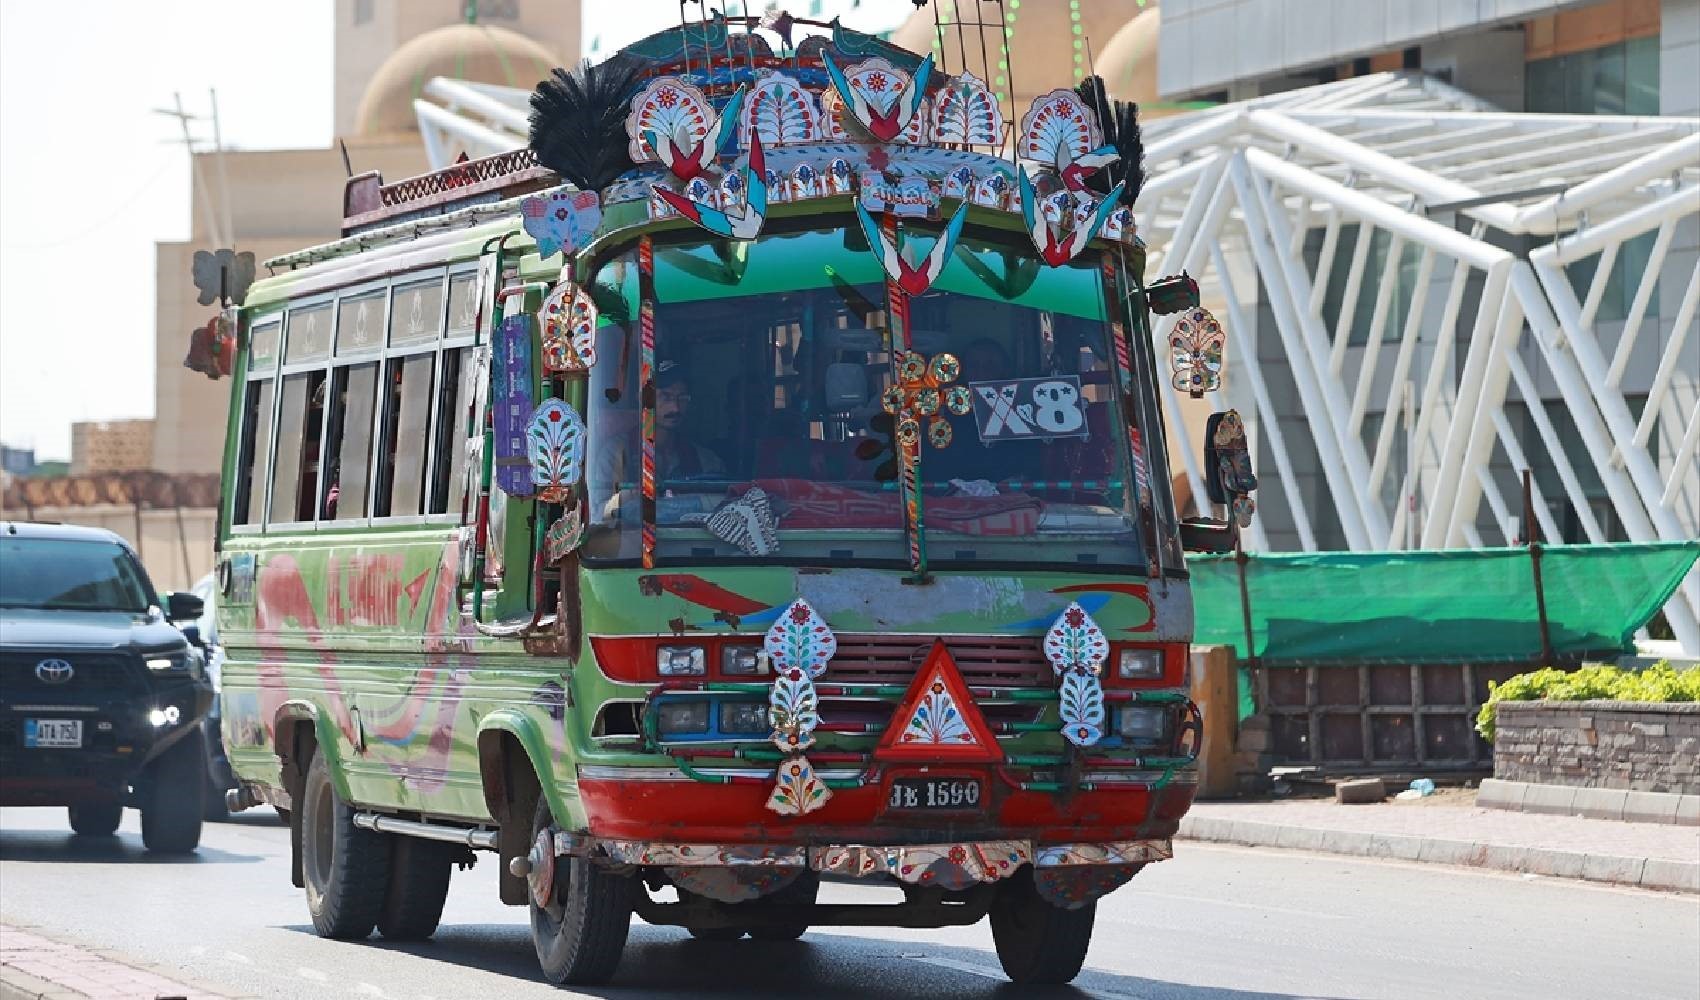 Pakistan'da otobüsler renkleriyle dikkat çekiyor